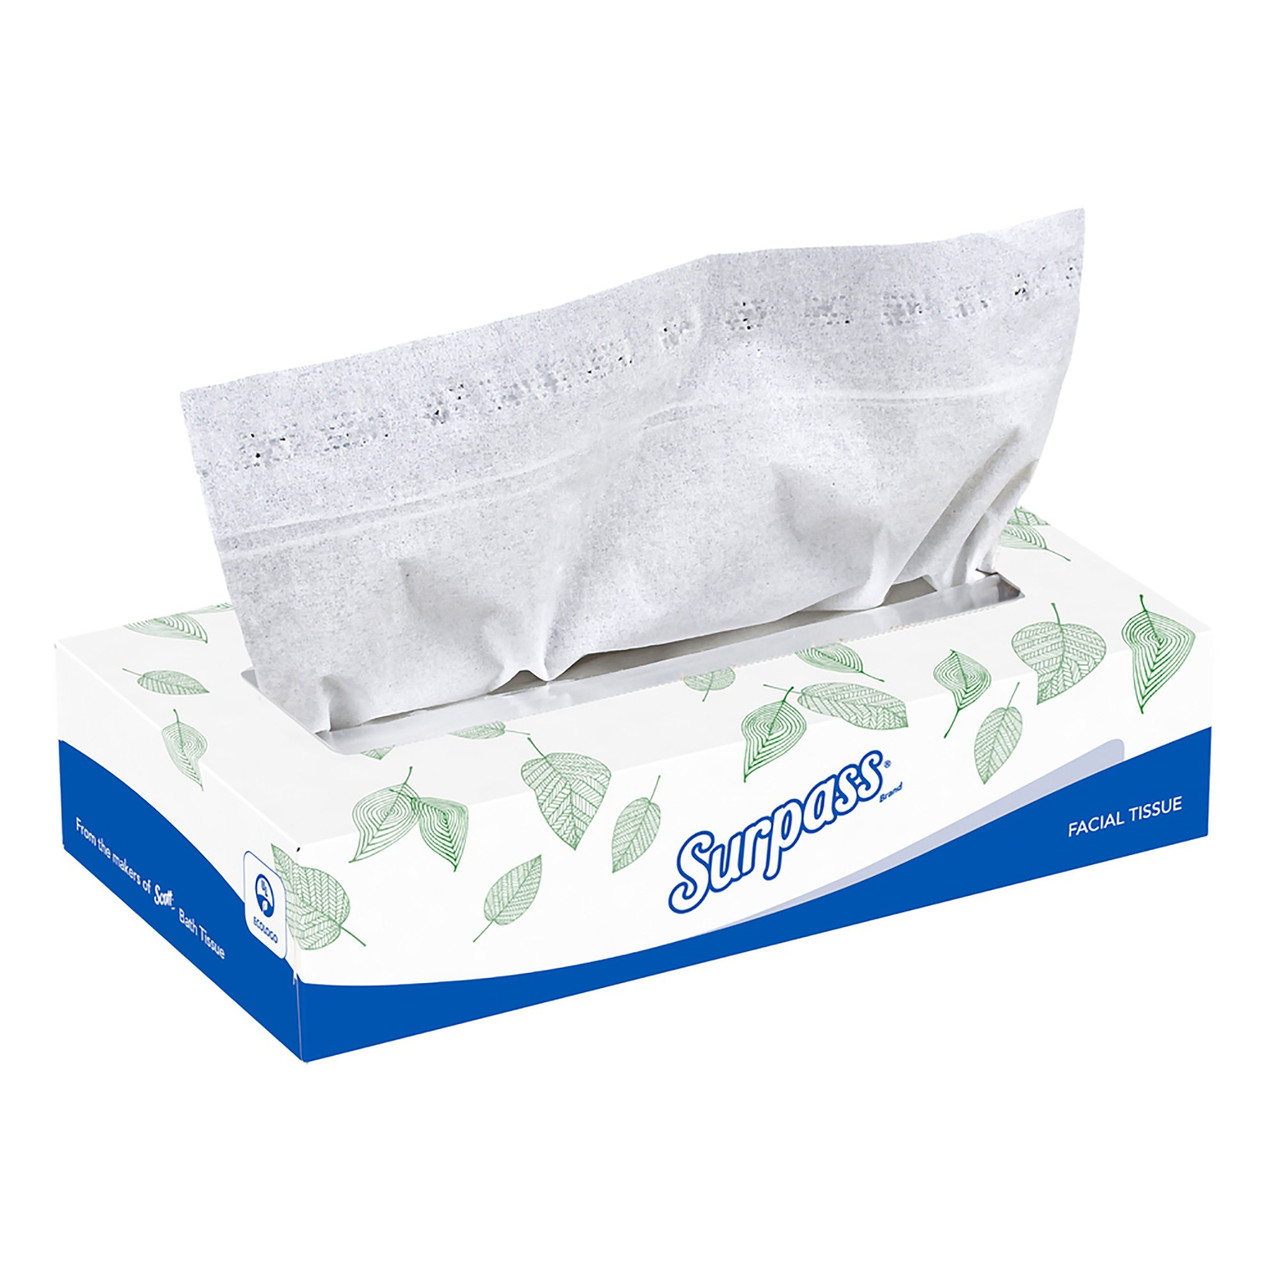 Kleenex Boutique 2-Ply Facial Tissue - White